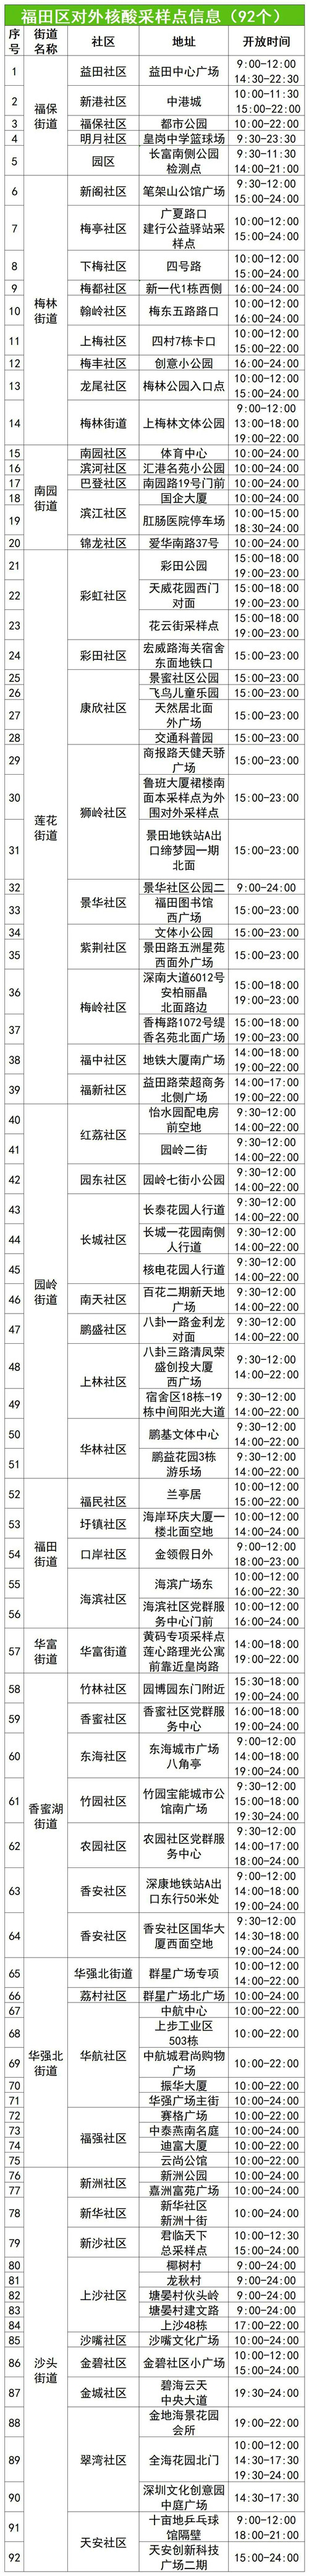 福田区7月26日免费核酸检测点一览表